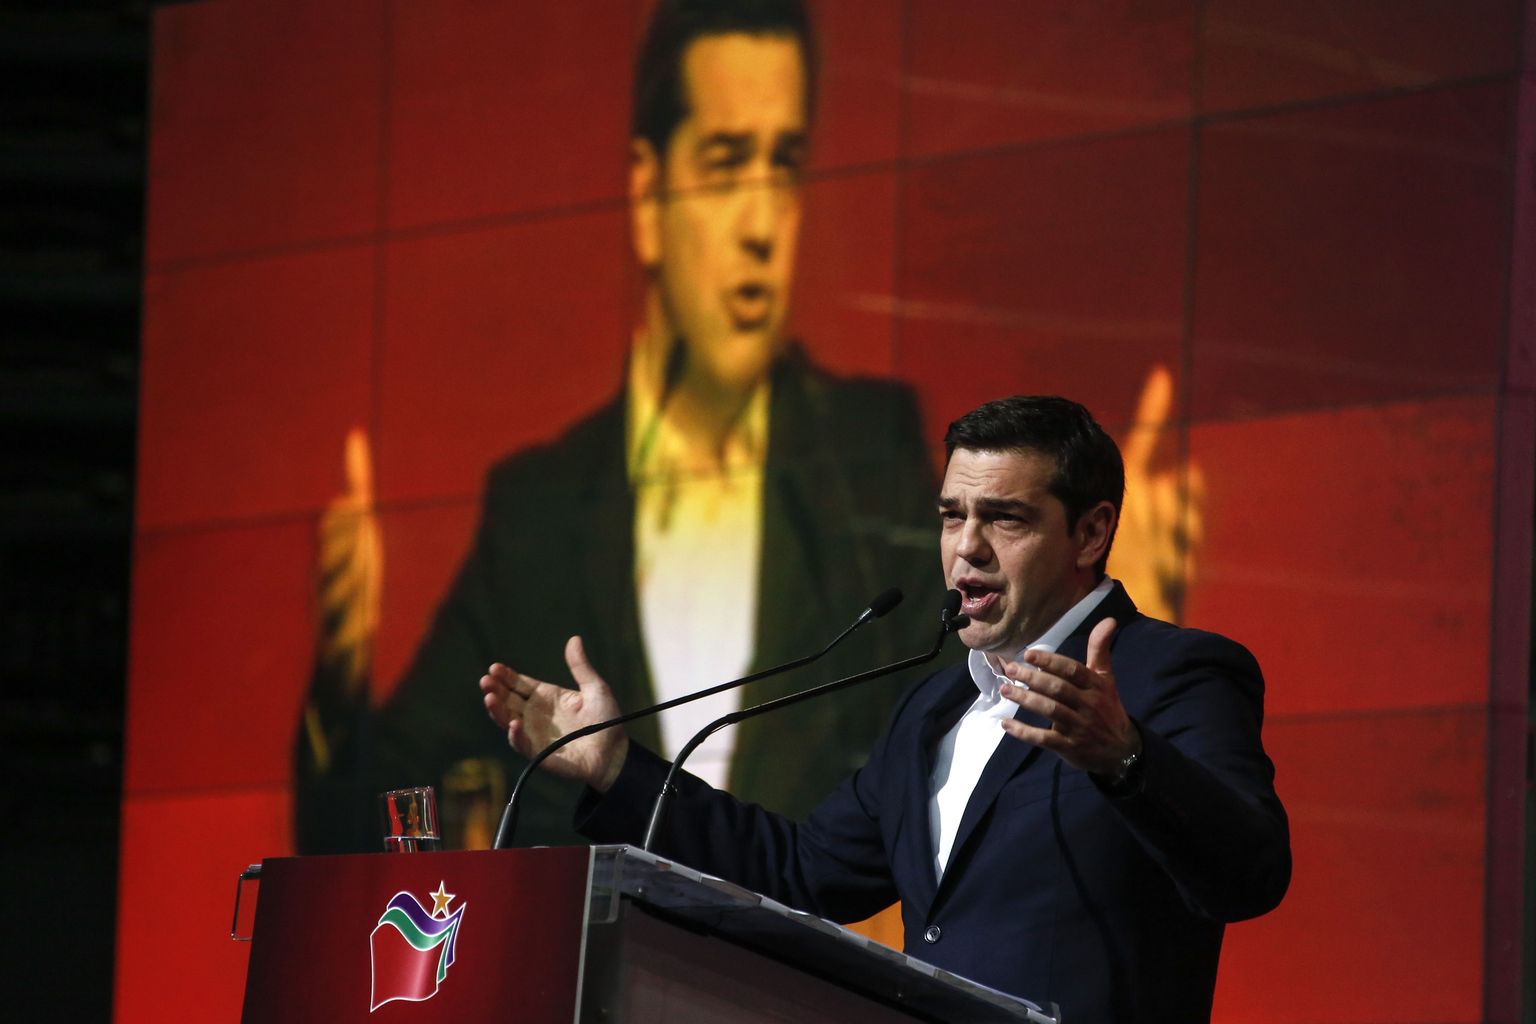 kreeka peaminister Alexis Tsipras pühapäeval oma partei Syriza miitingul kõnelemas.